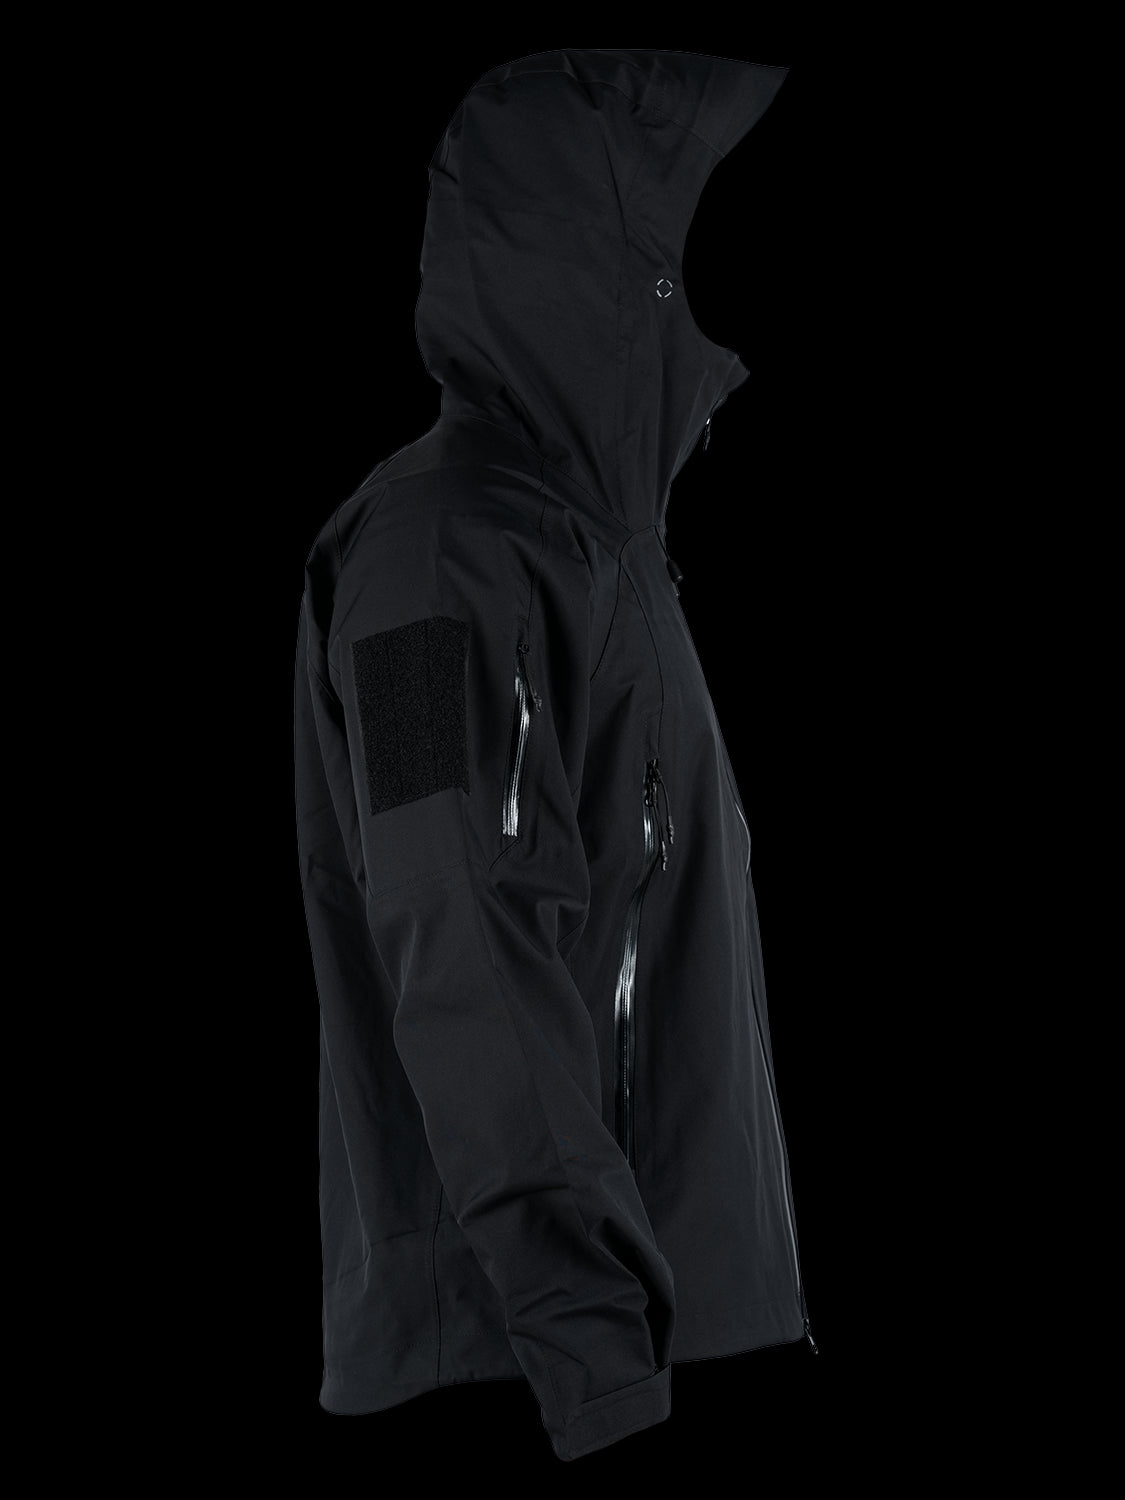 4-14 Rainwear Jacket - Black (ATACAMA)